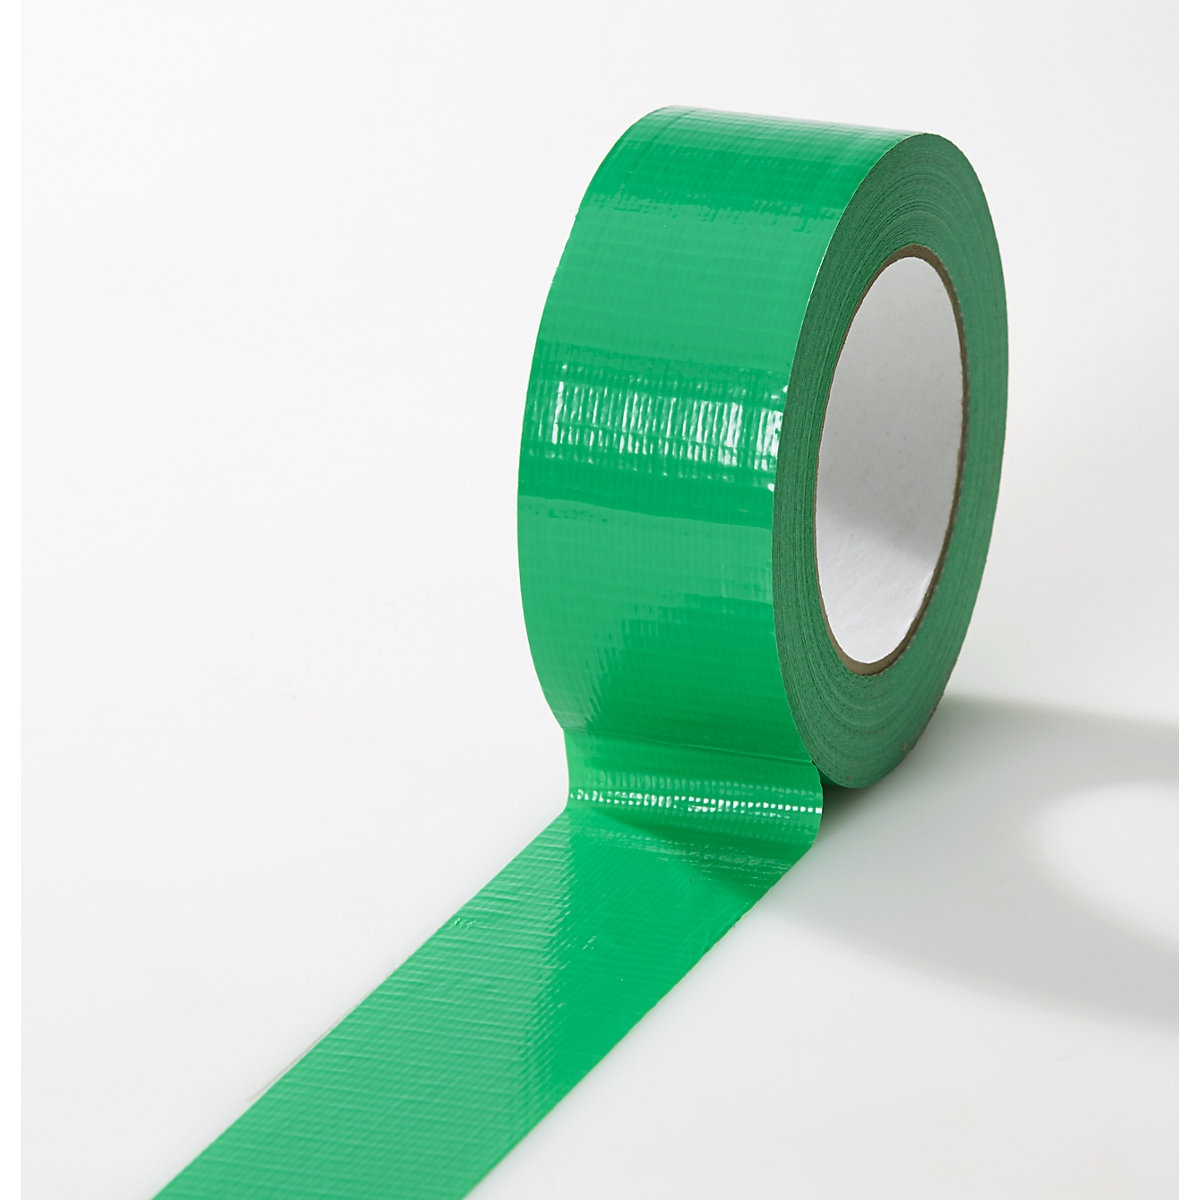 Gewebeband, in verschiedenen Farben, VE 24 Rollen, grün, Bandbreite 38 mm